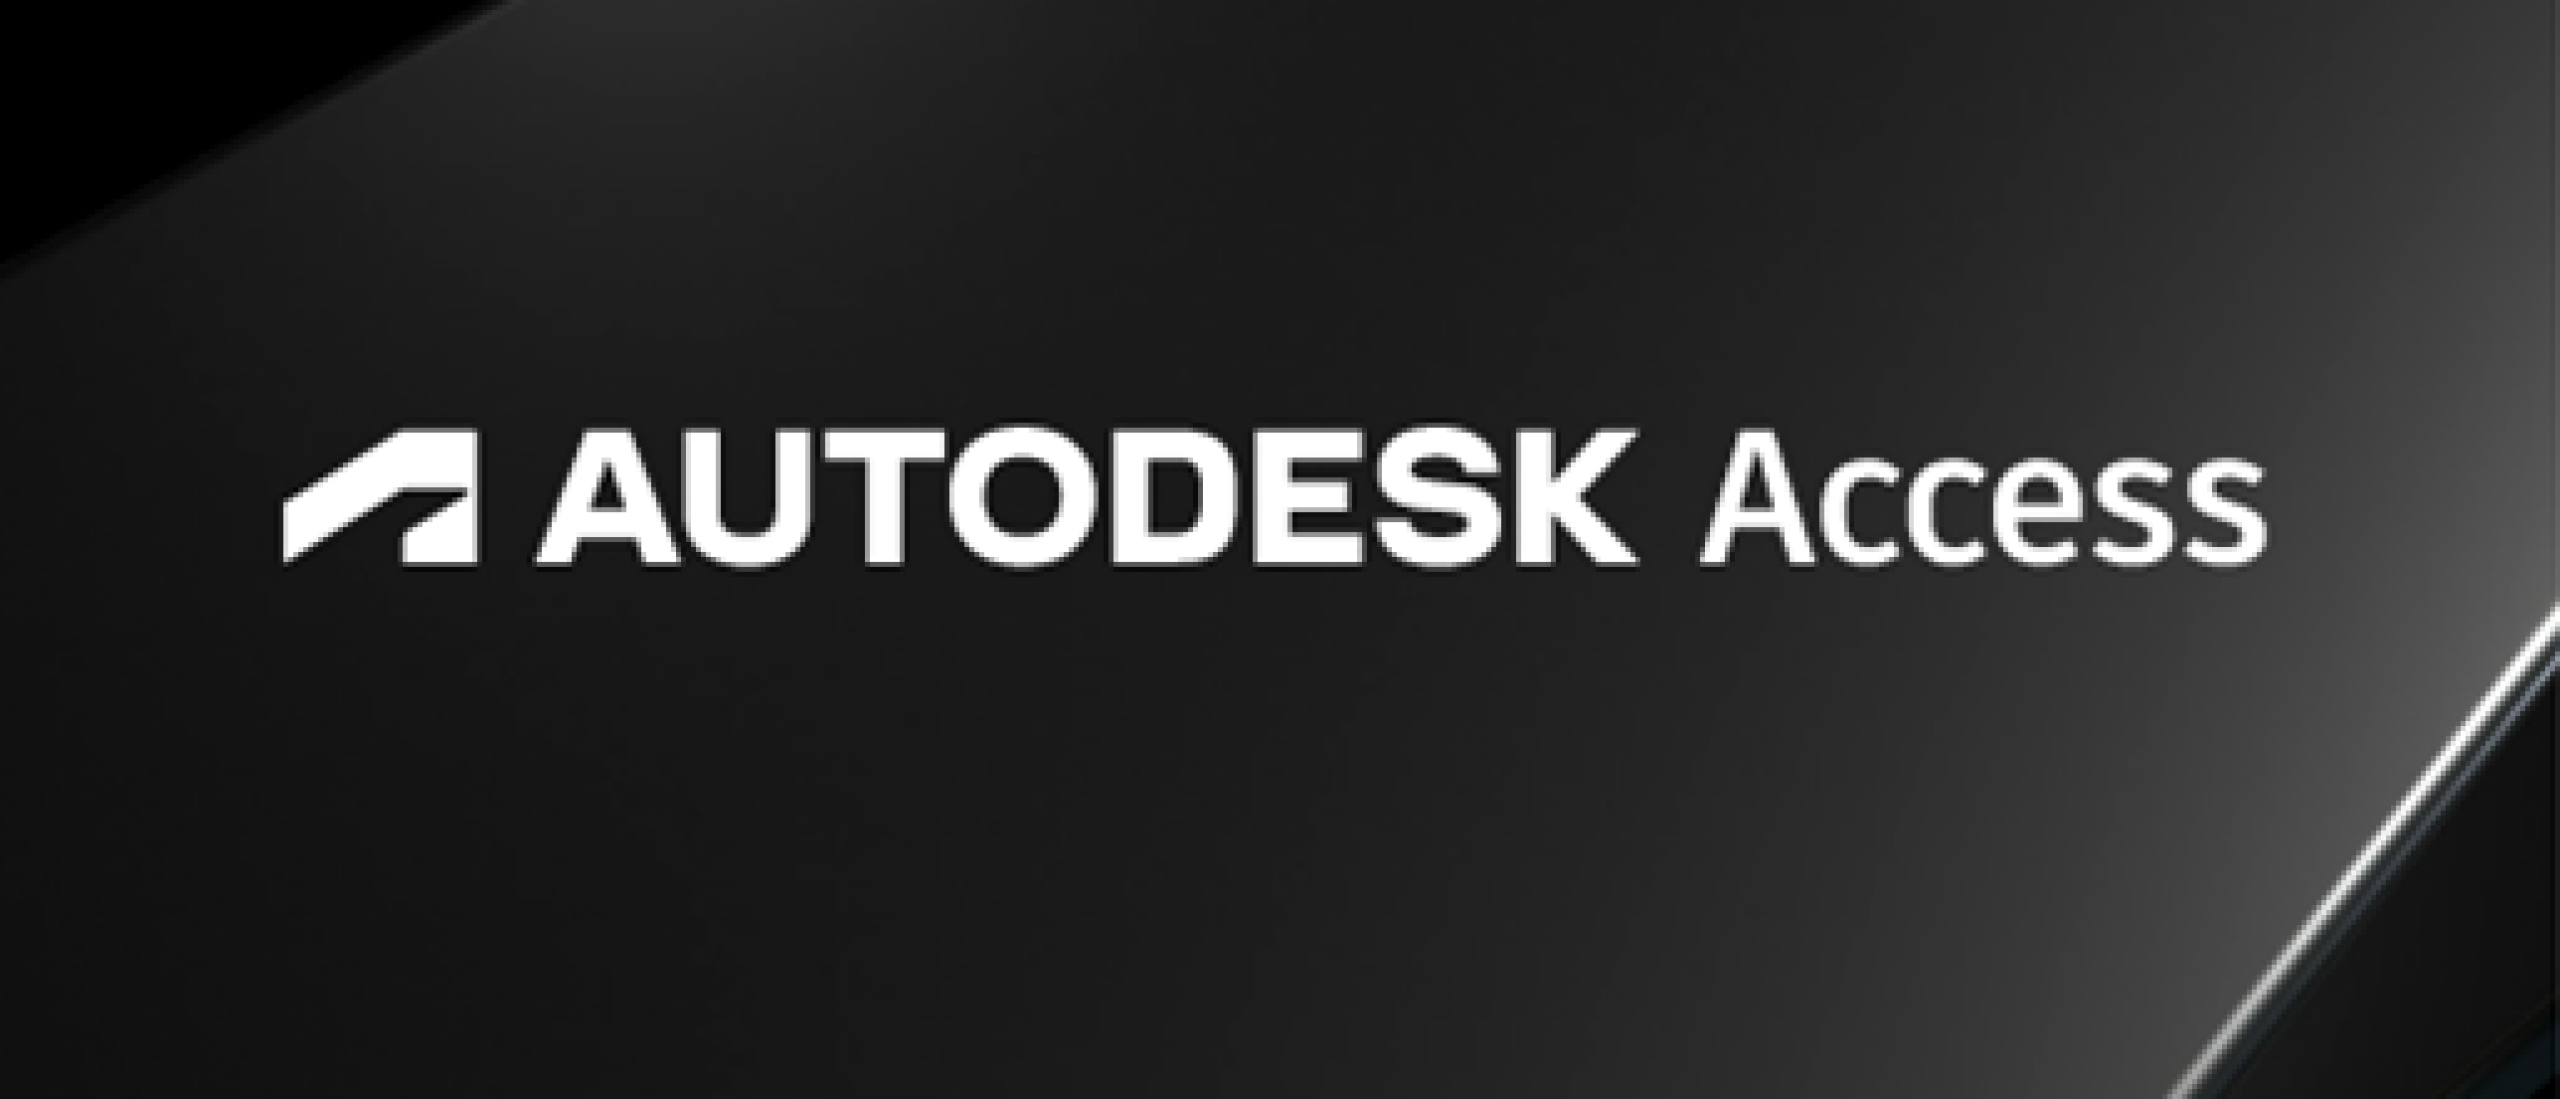 Voorkomen dat gebruikers Autodesk updates installeren via Autodesk Access